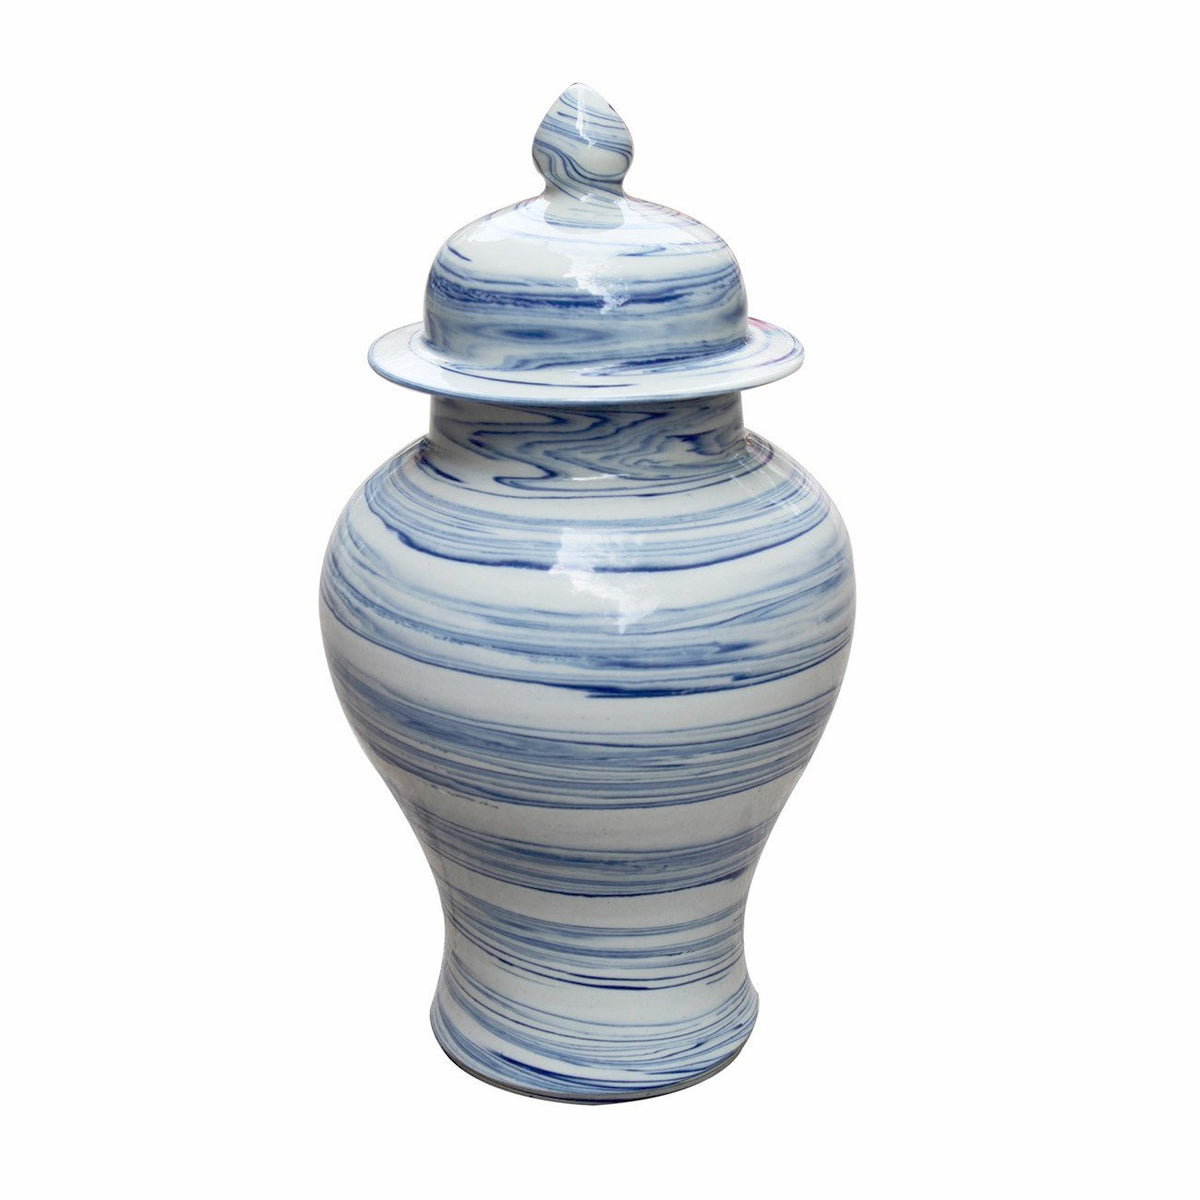 Marbleized Temple Jar Porcelain Pottery